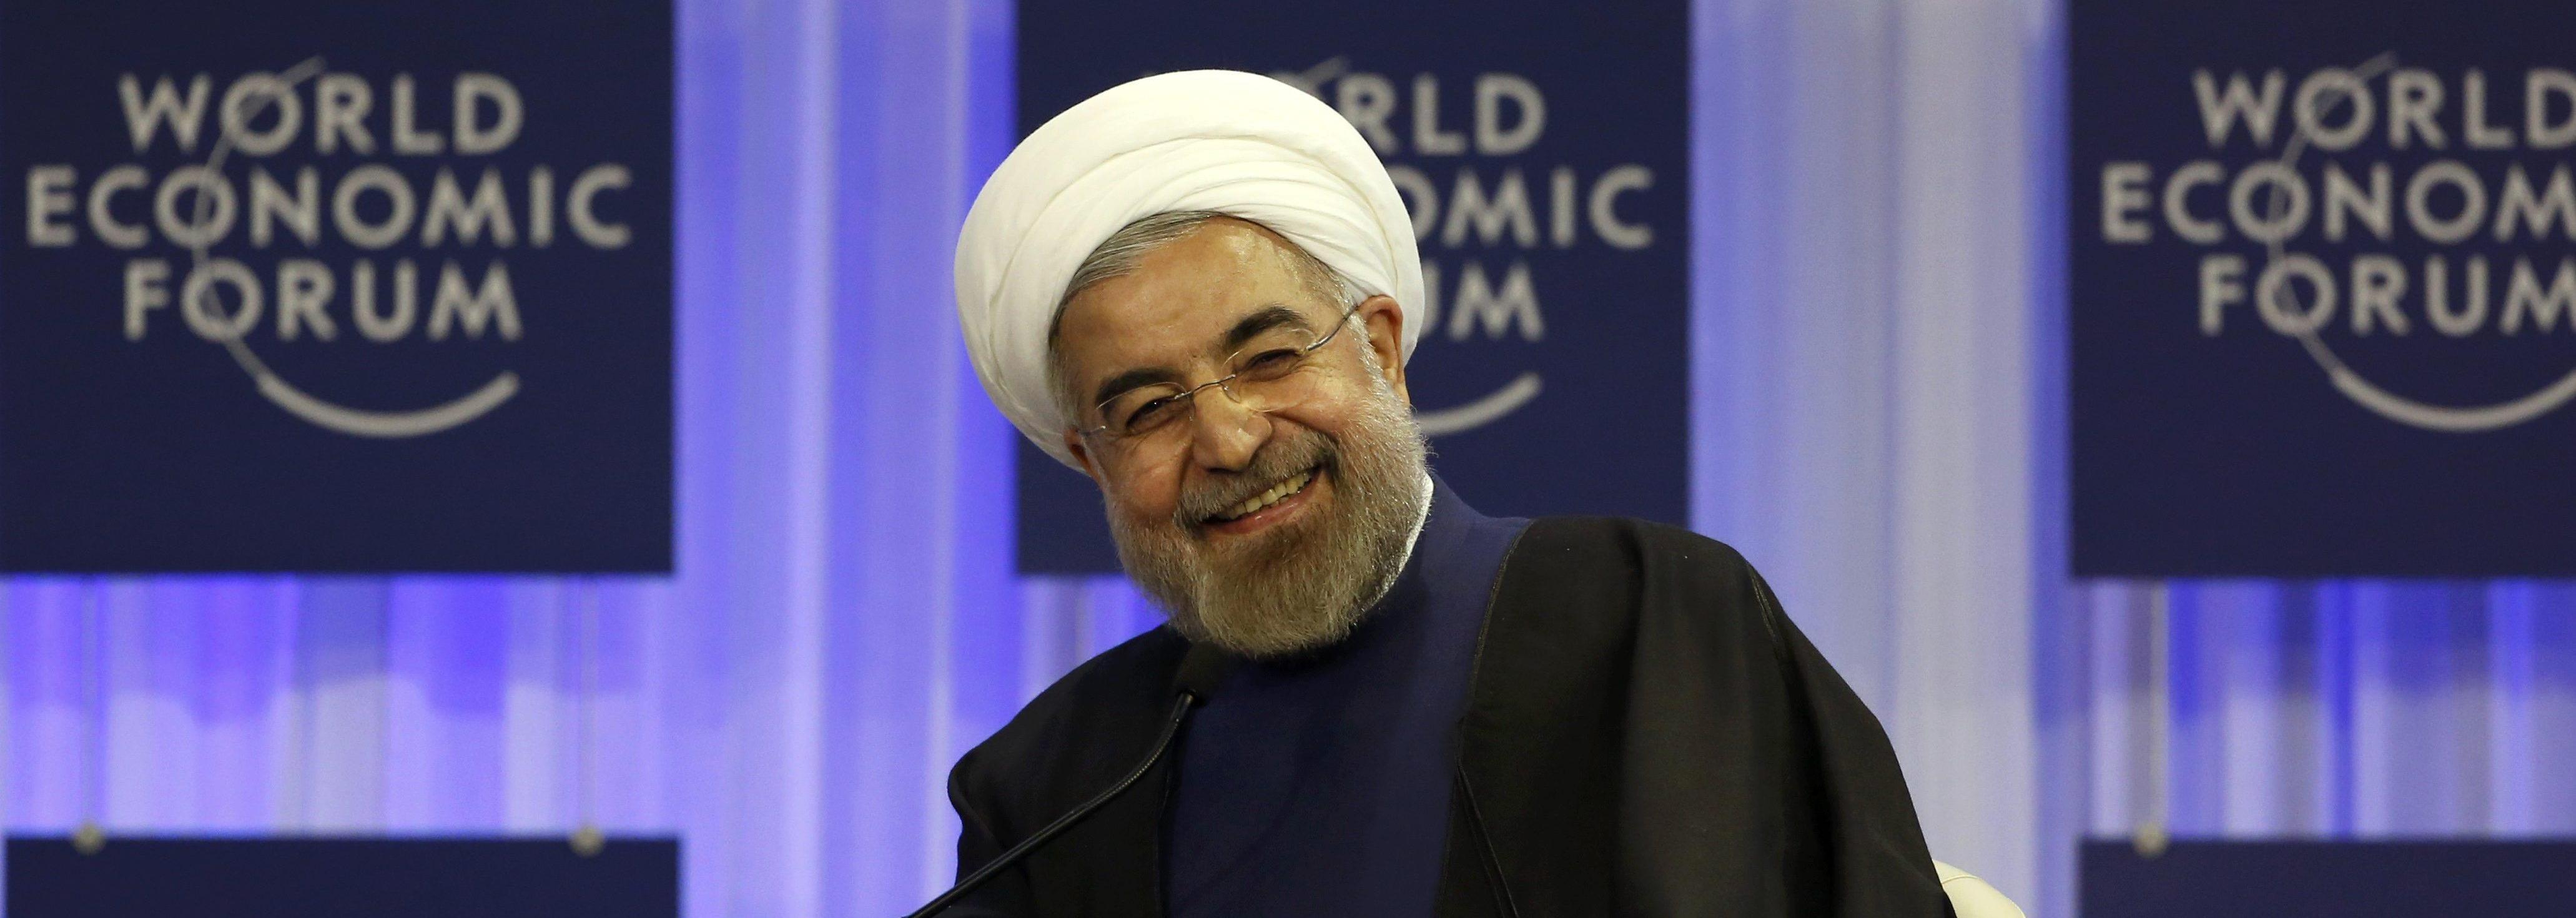 Rouhani-Davos1